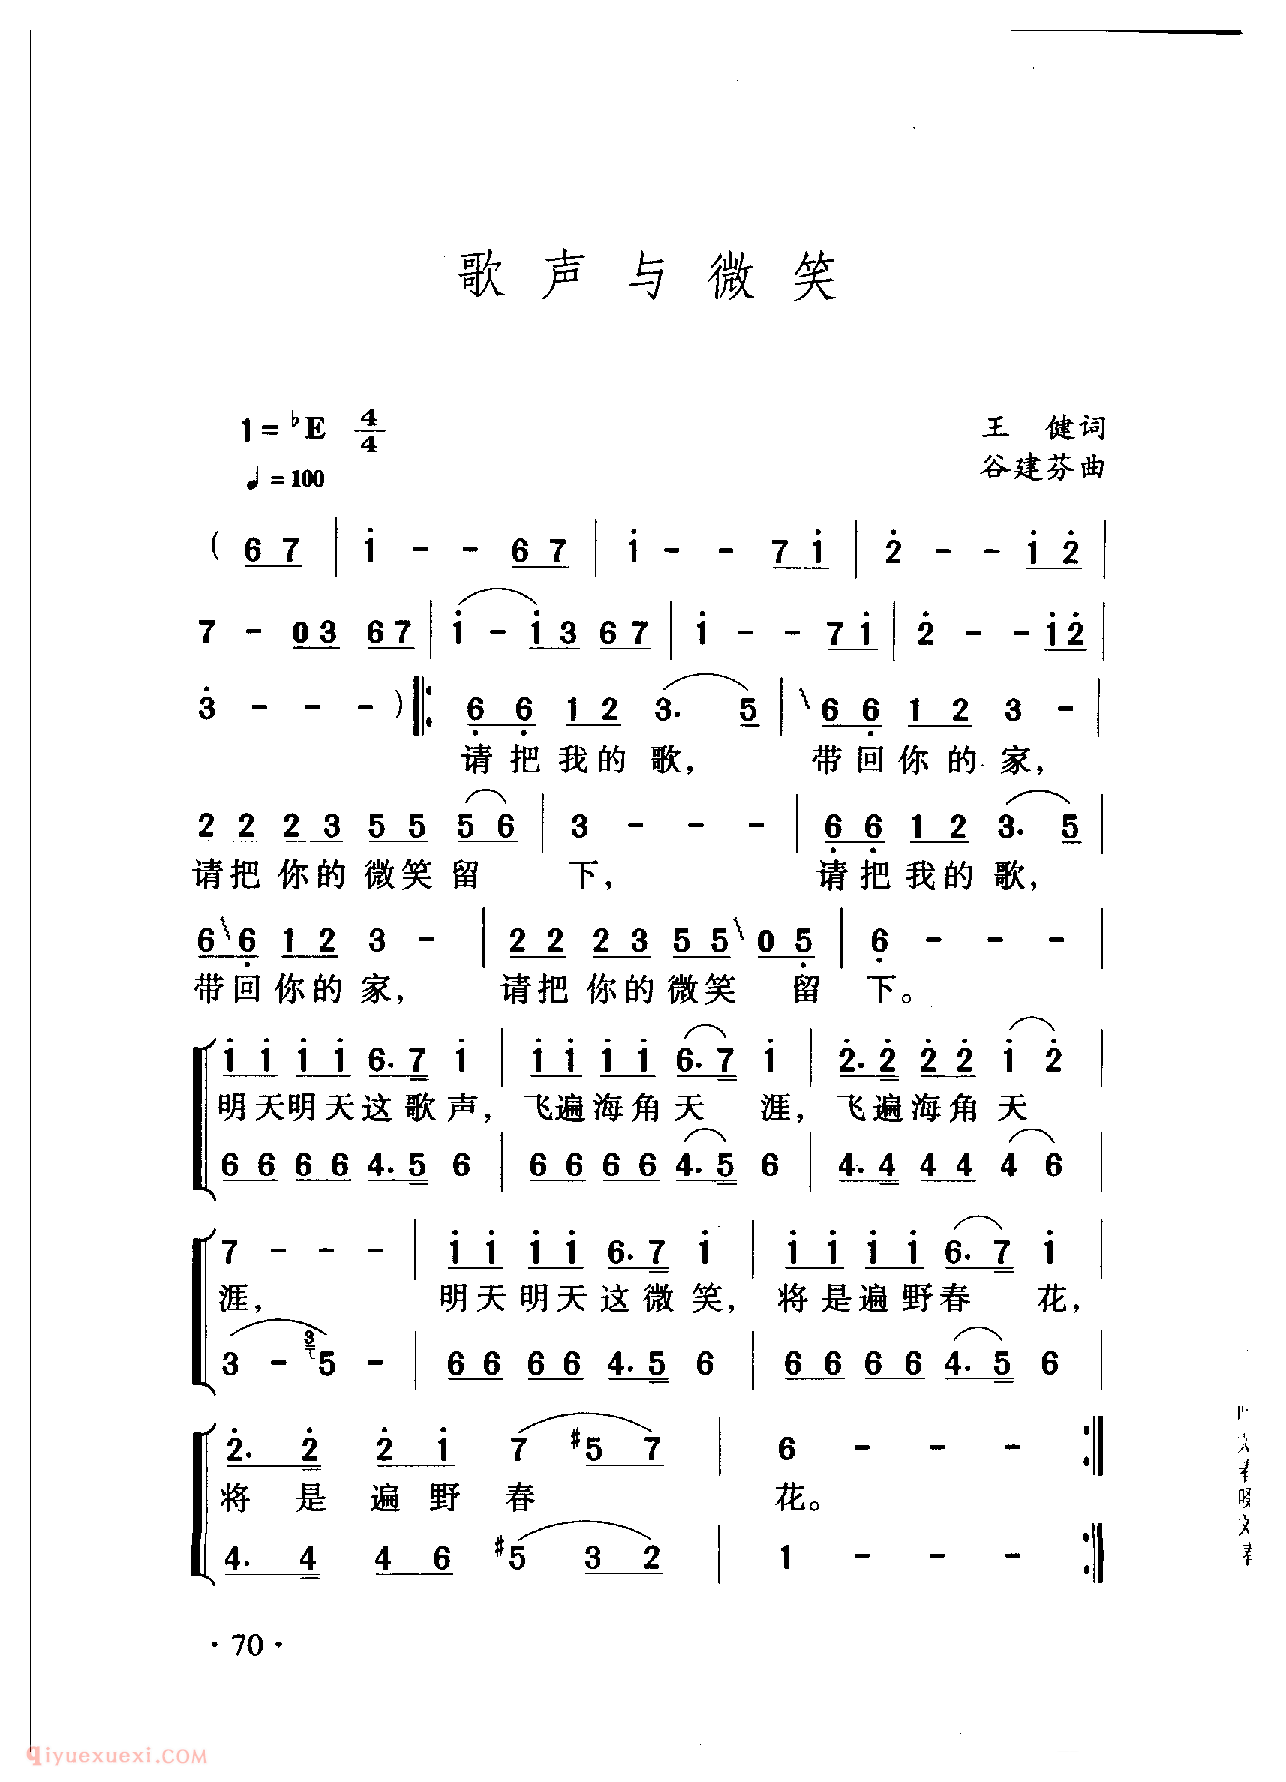 中国名歌[歌声与微笑]乐谱